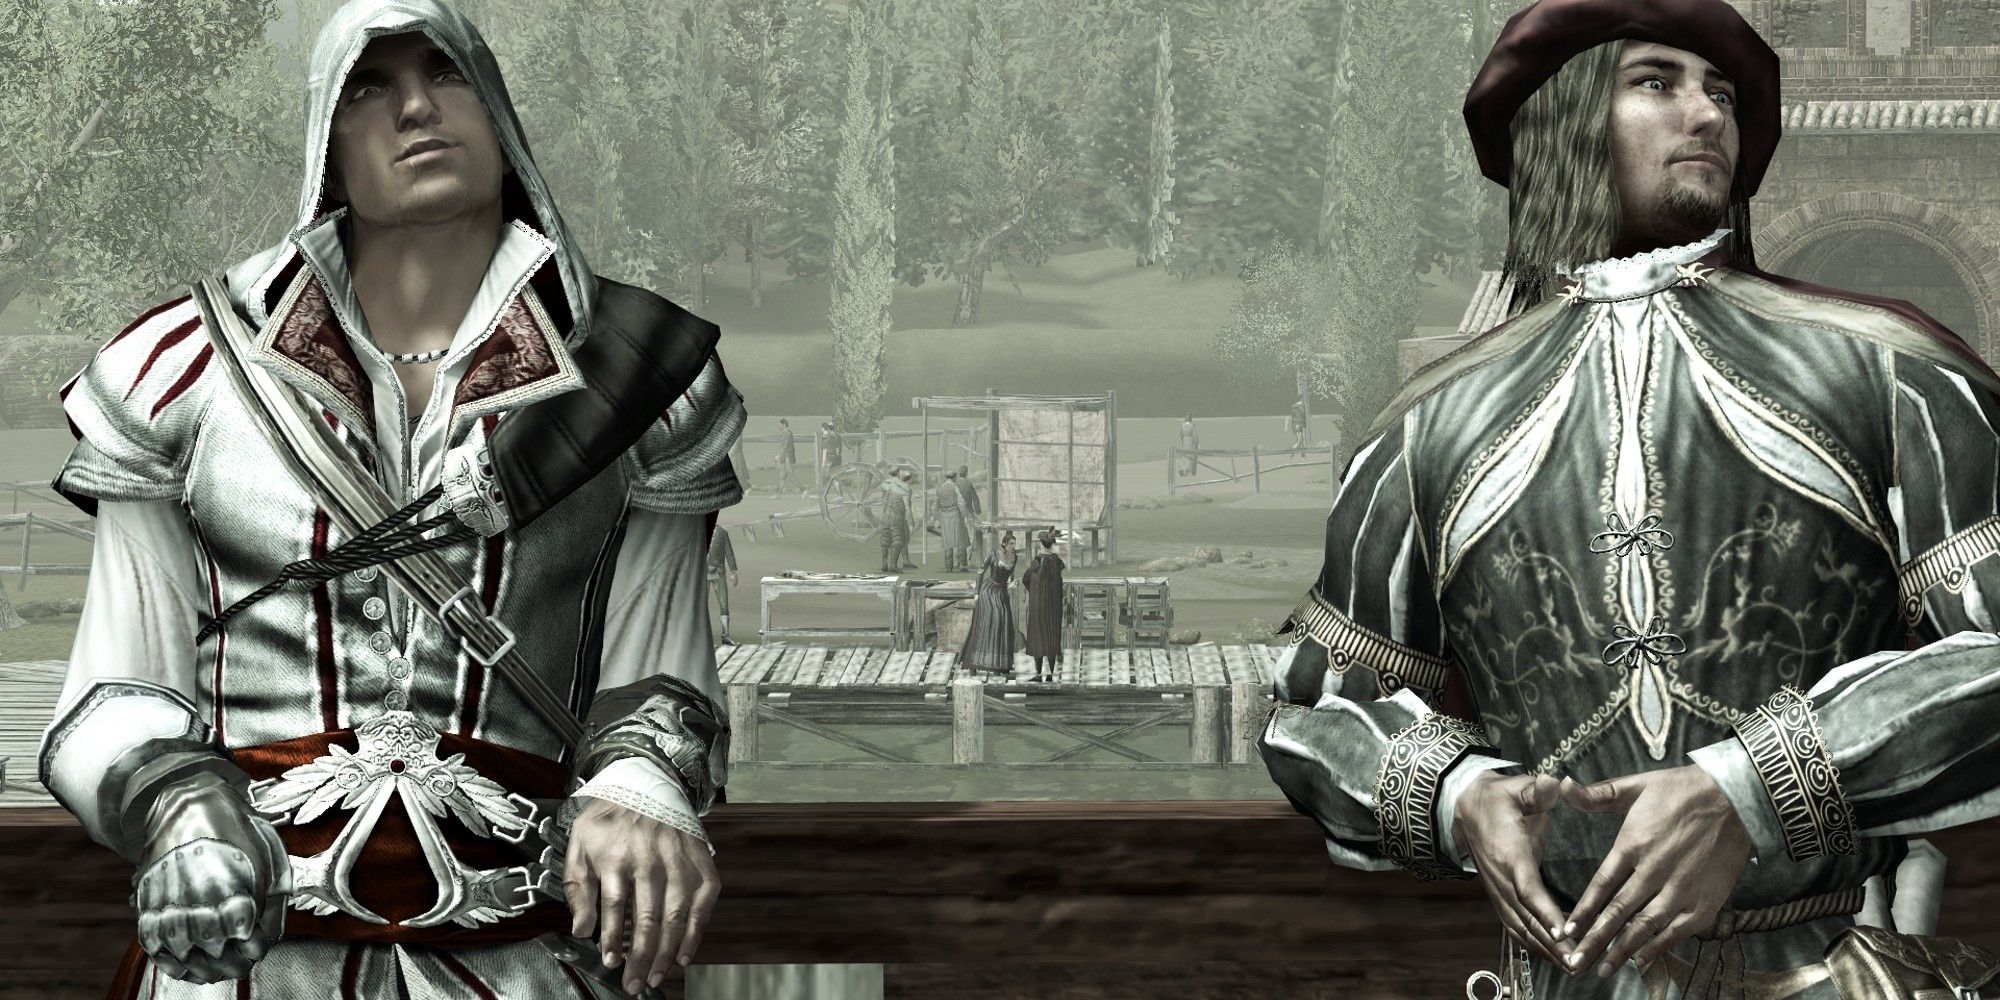 Assassin's Creed 2 - Ezio Auditore and Leonardo da Vinci chiling